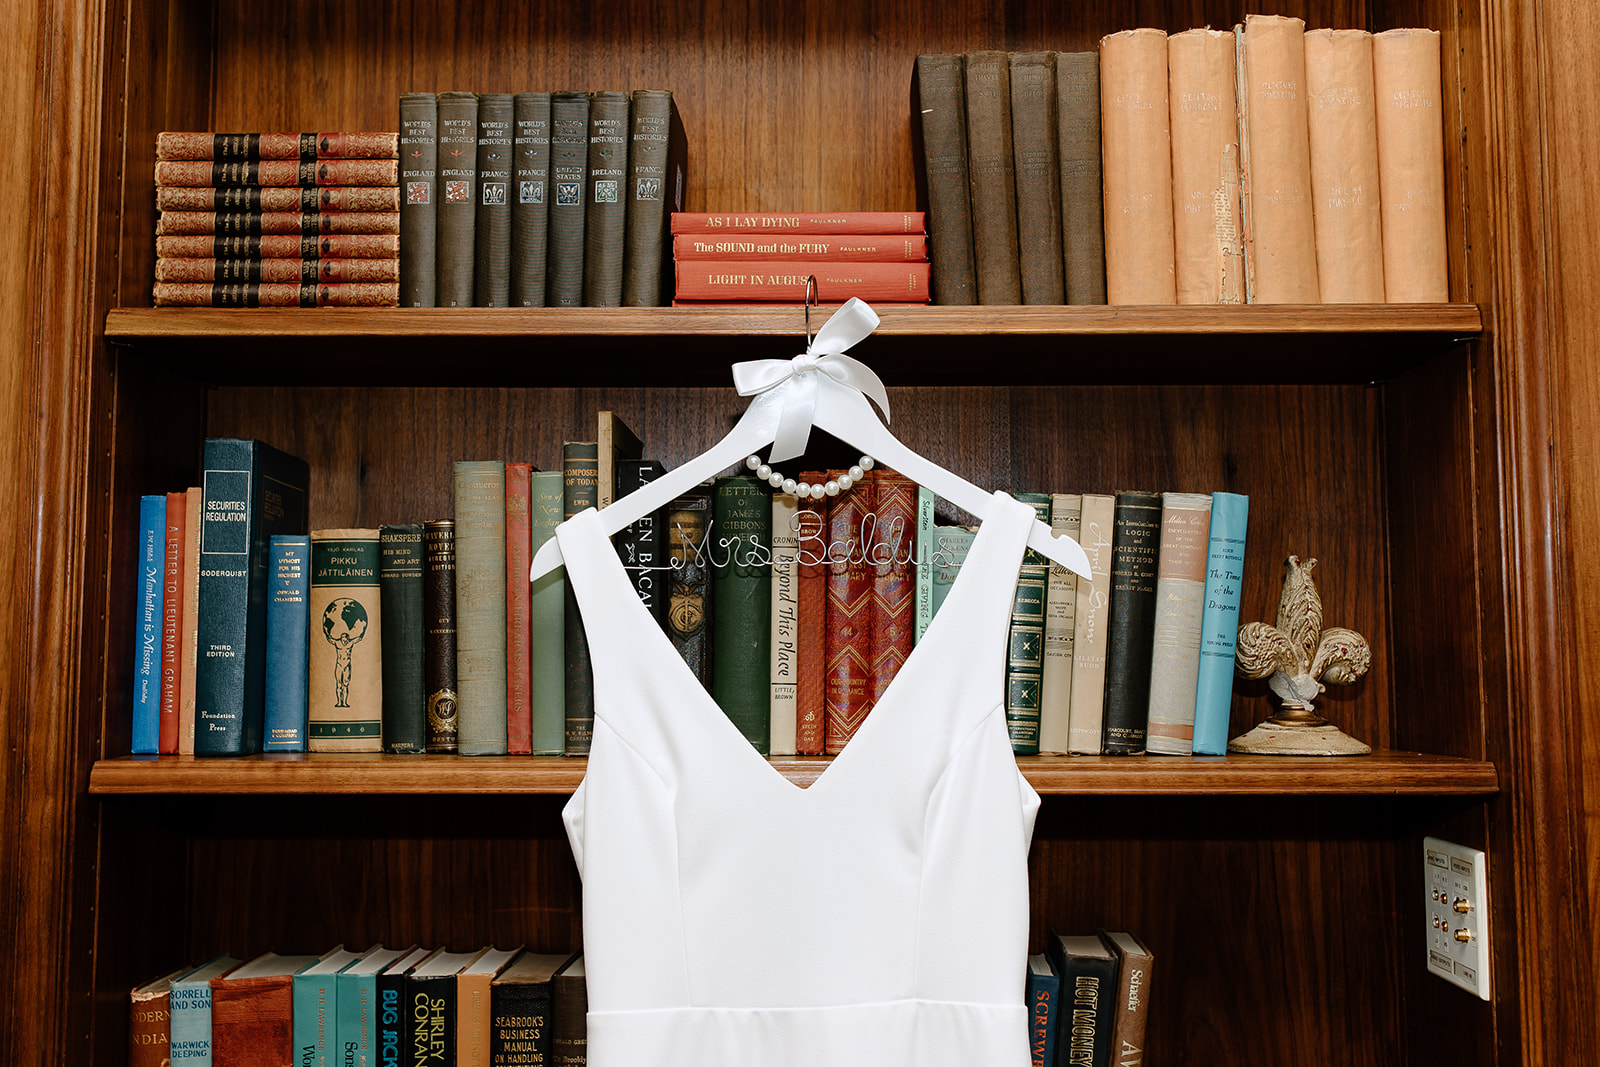 Wedding dress hanging from a bookshelf